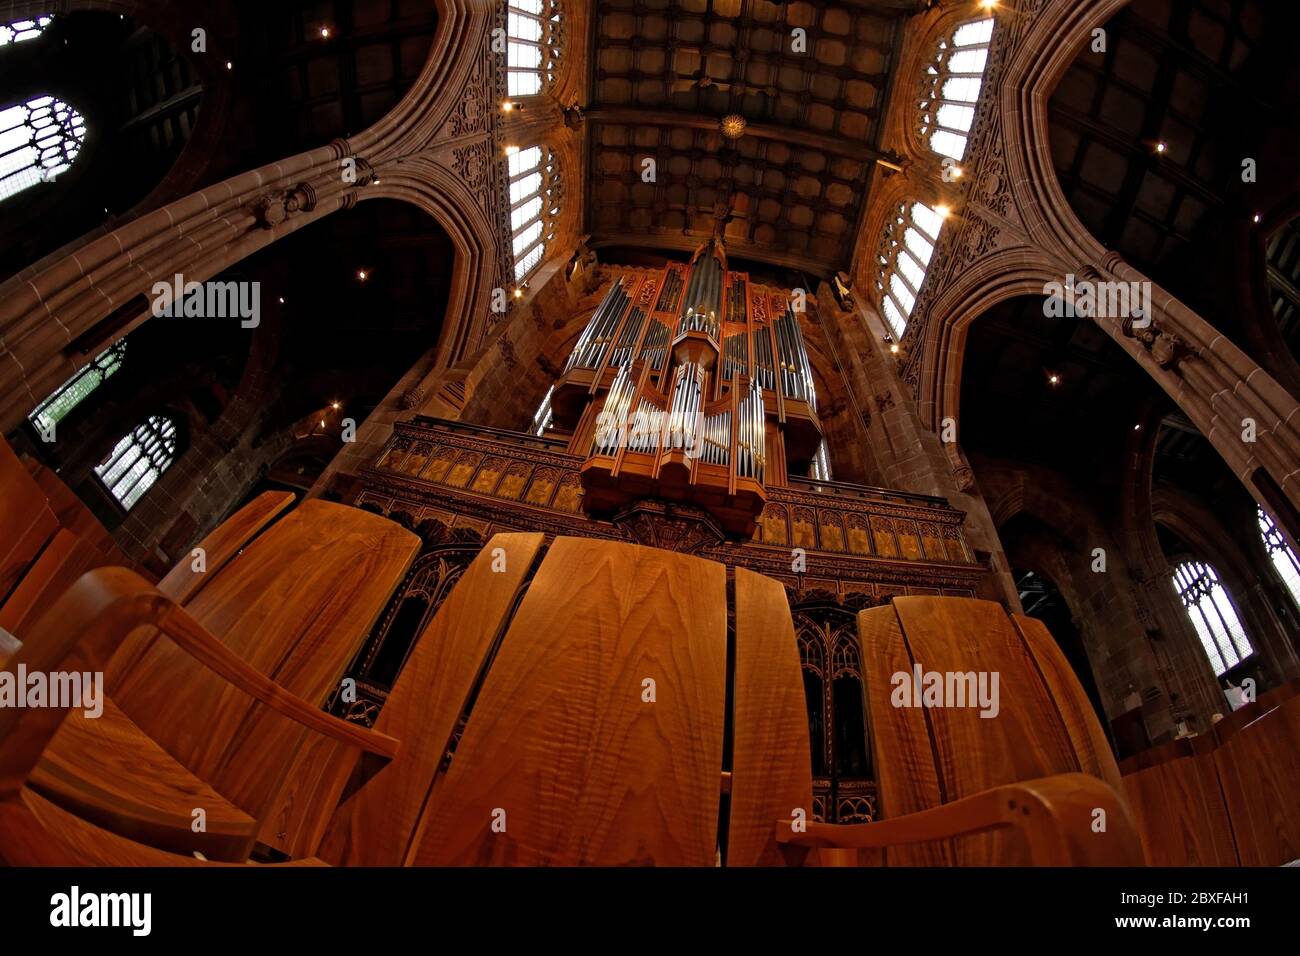 Vue vers le haut depuis la nef de l'orgue de la cathédrale de Manchester. La nef a de magnifiques murs et fenêtres voûtés et a a sculpté plafond en bois Banque D'Images